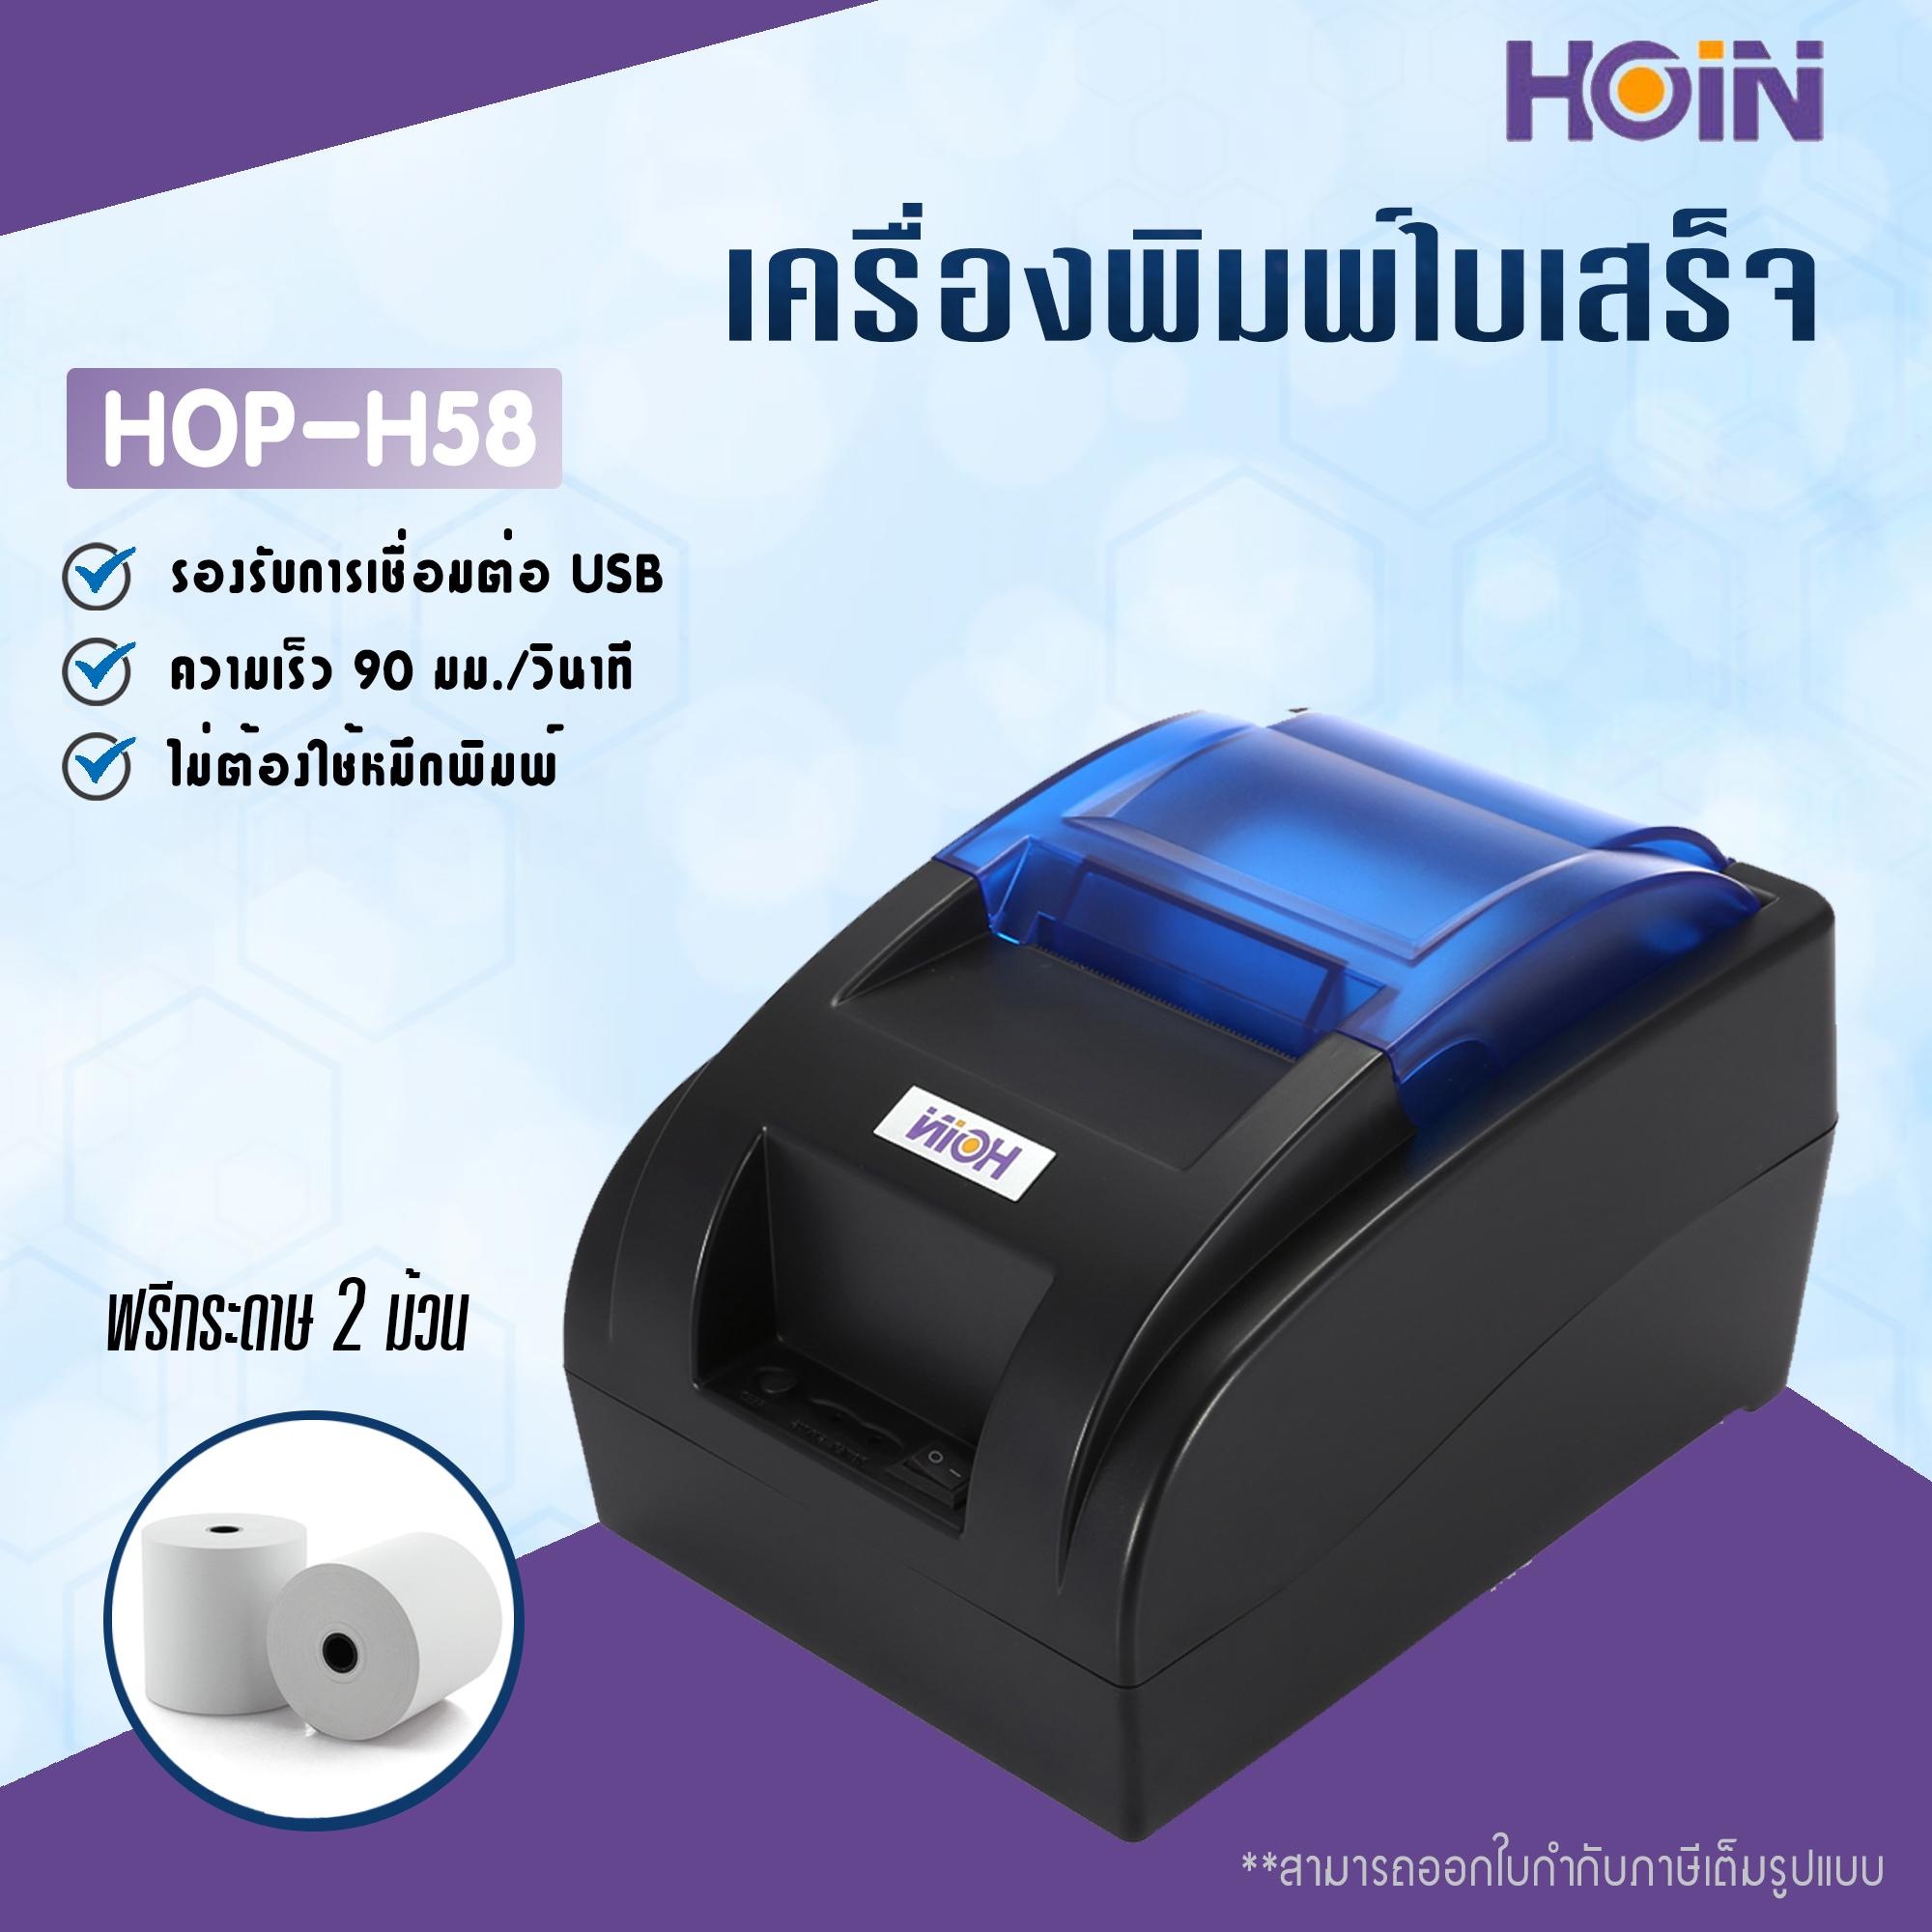 เครื่องพิมพ์ใบเสร็จ Hoin รุ่น HOP-H58 รองรับขนาด 58 มม. (Receipt Printer Thermal 58 mm.)